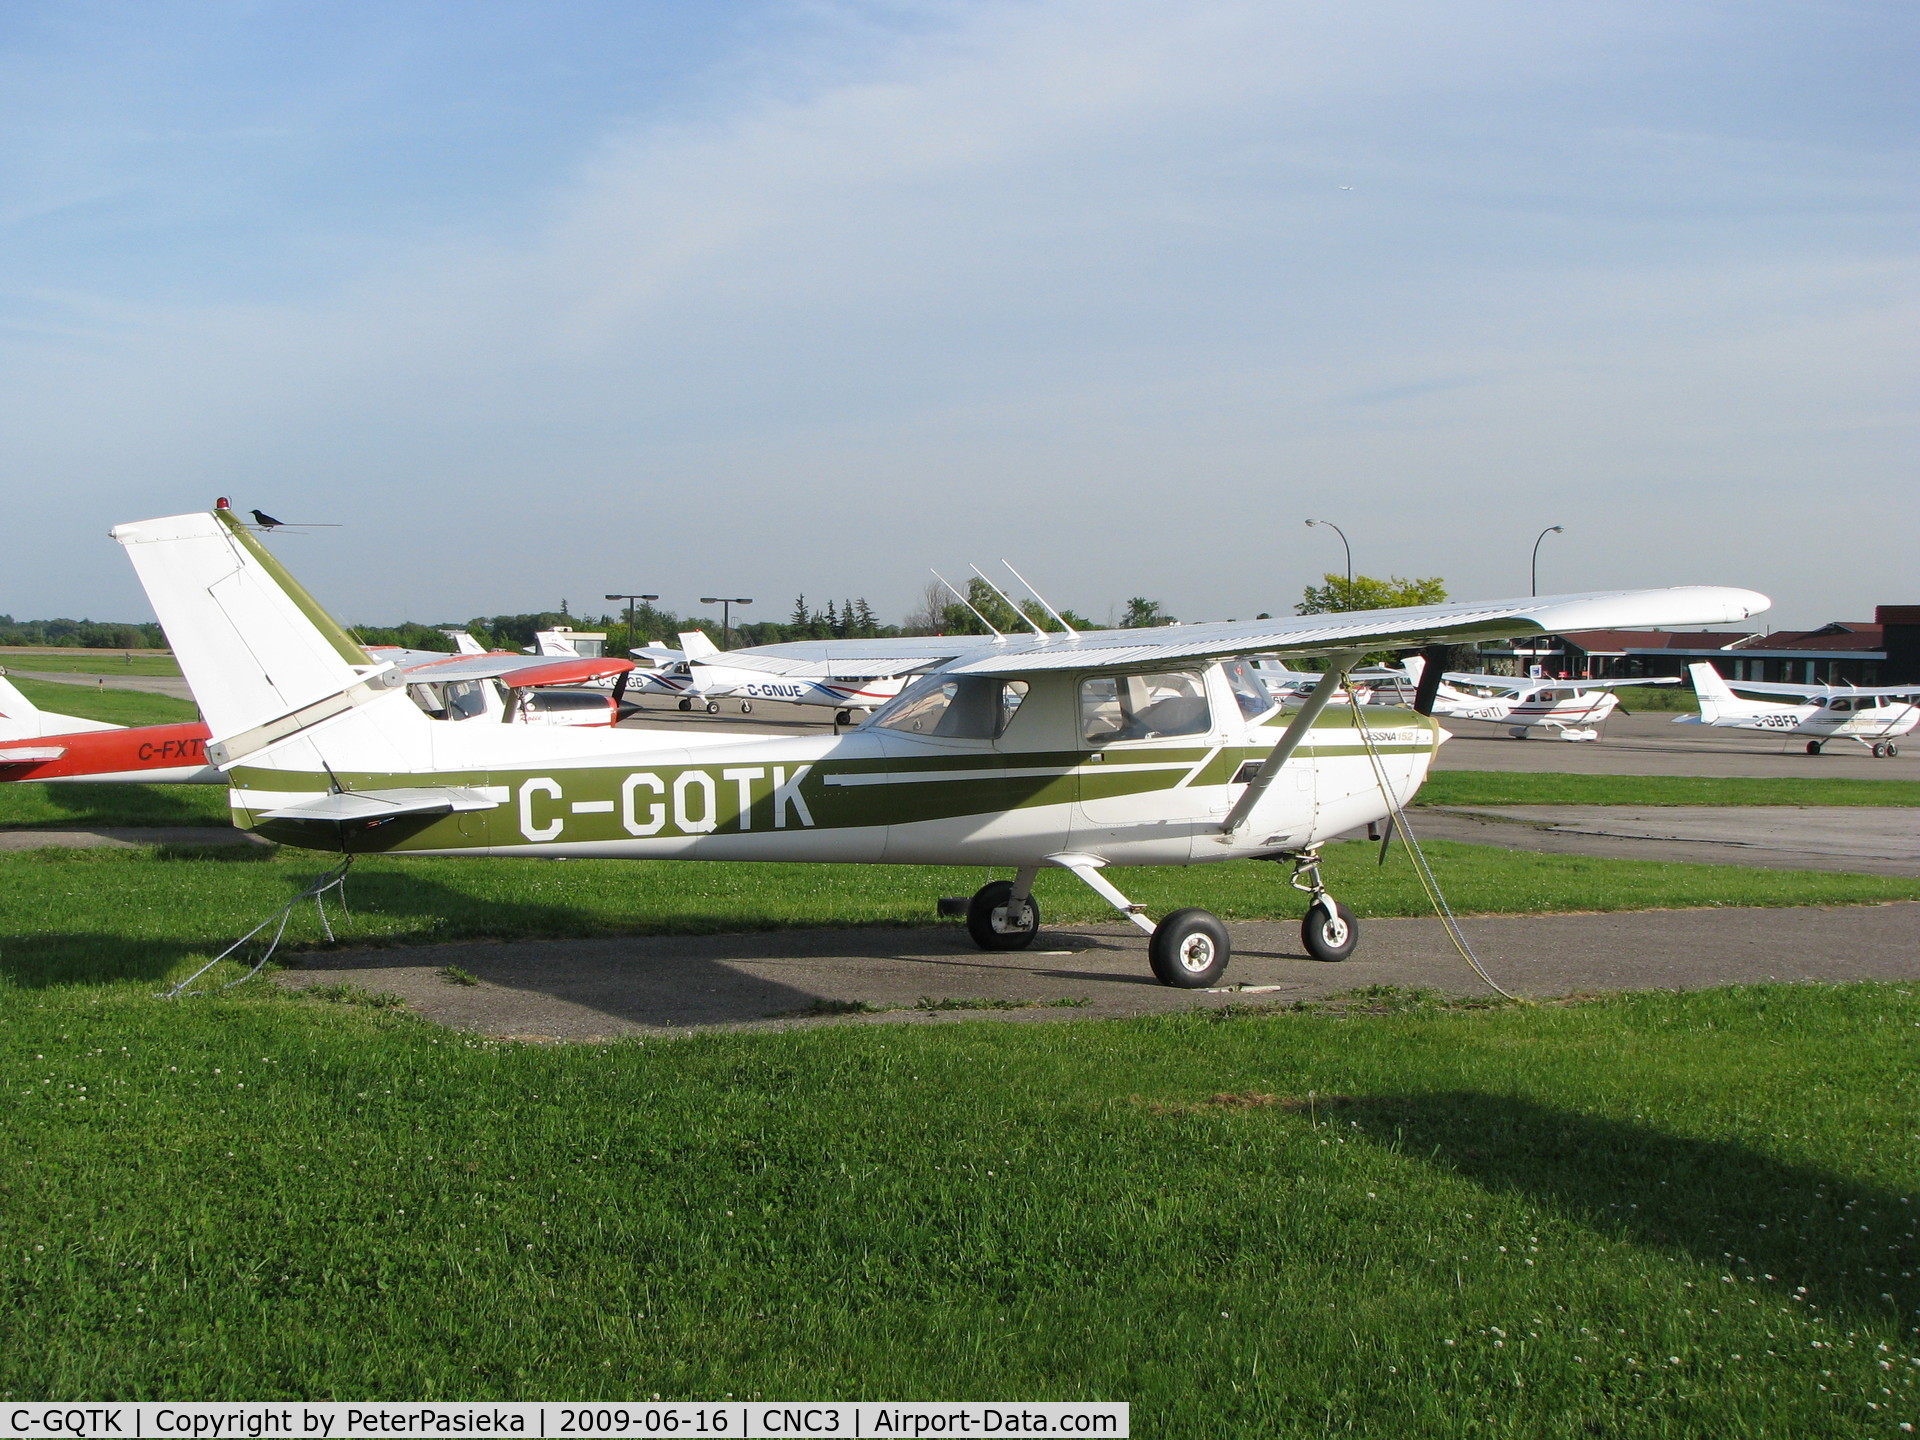 C-GQTK, 1979 Cessna 152 C/N 15283556, @ Brampton Airport